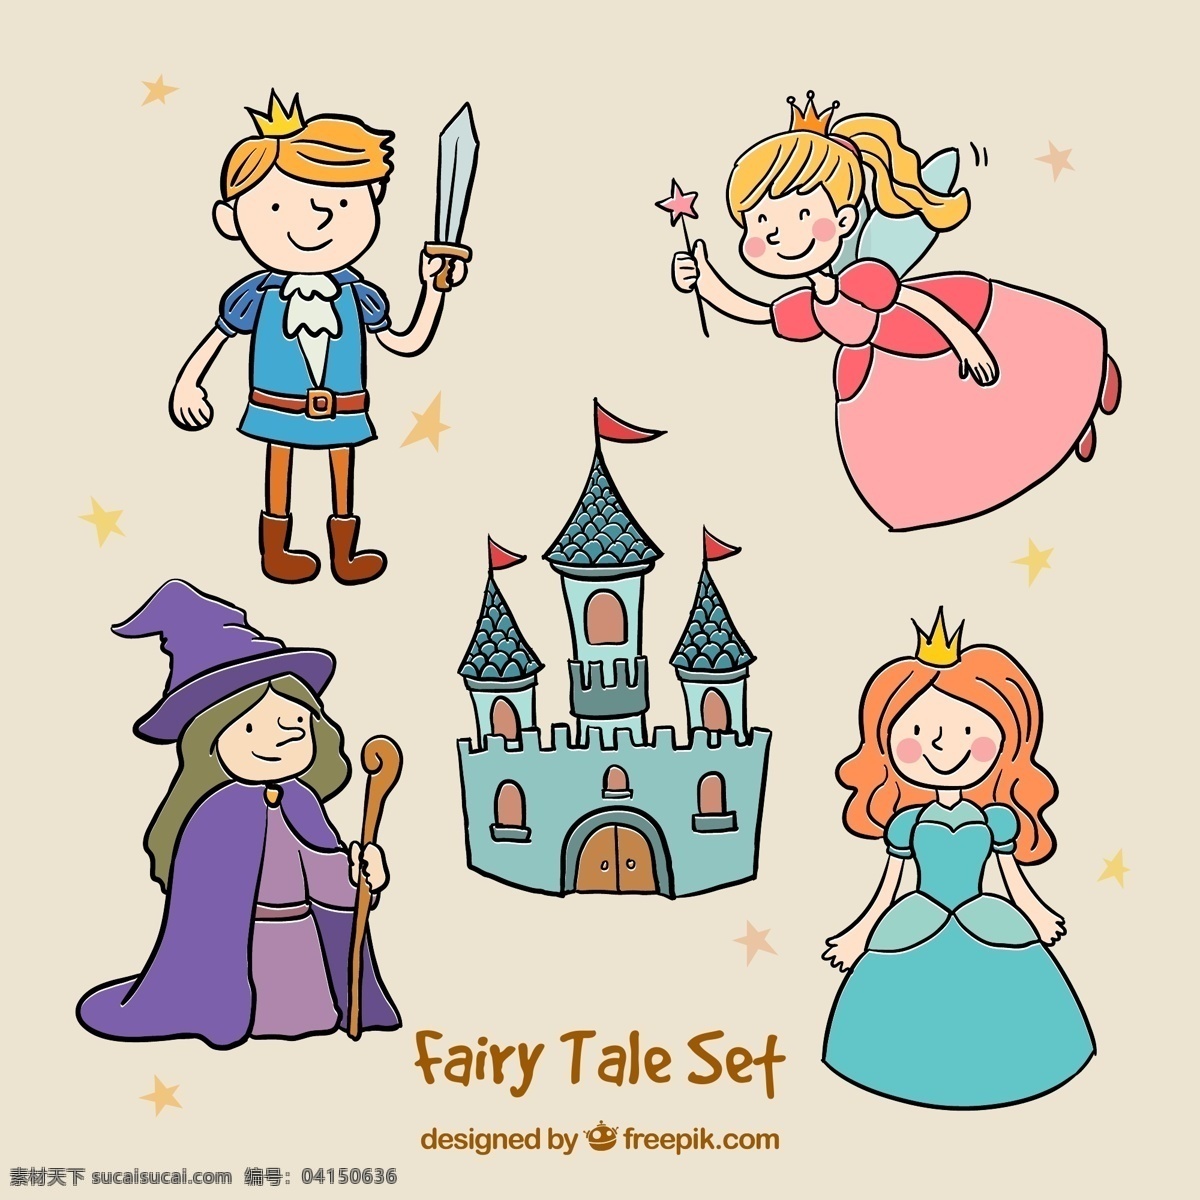 童话元素 皇冠 盾 地势平坦 城堡 创意 平面 童话 剑 元素 人物 幻想 独角兽 框架 故事 斧 想象力